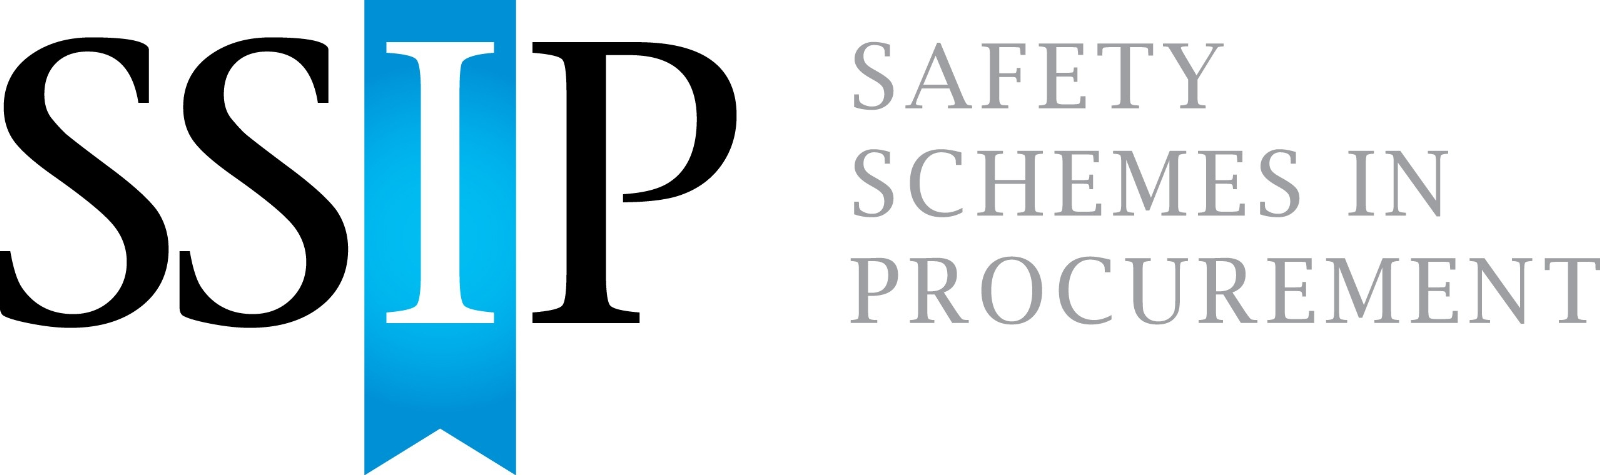 SSIP Logo.JPG